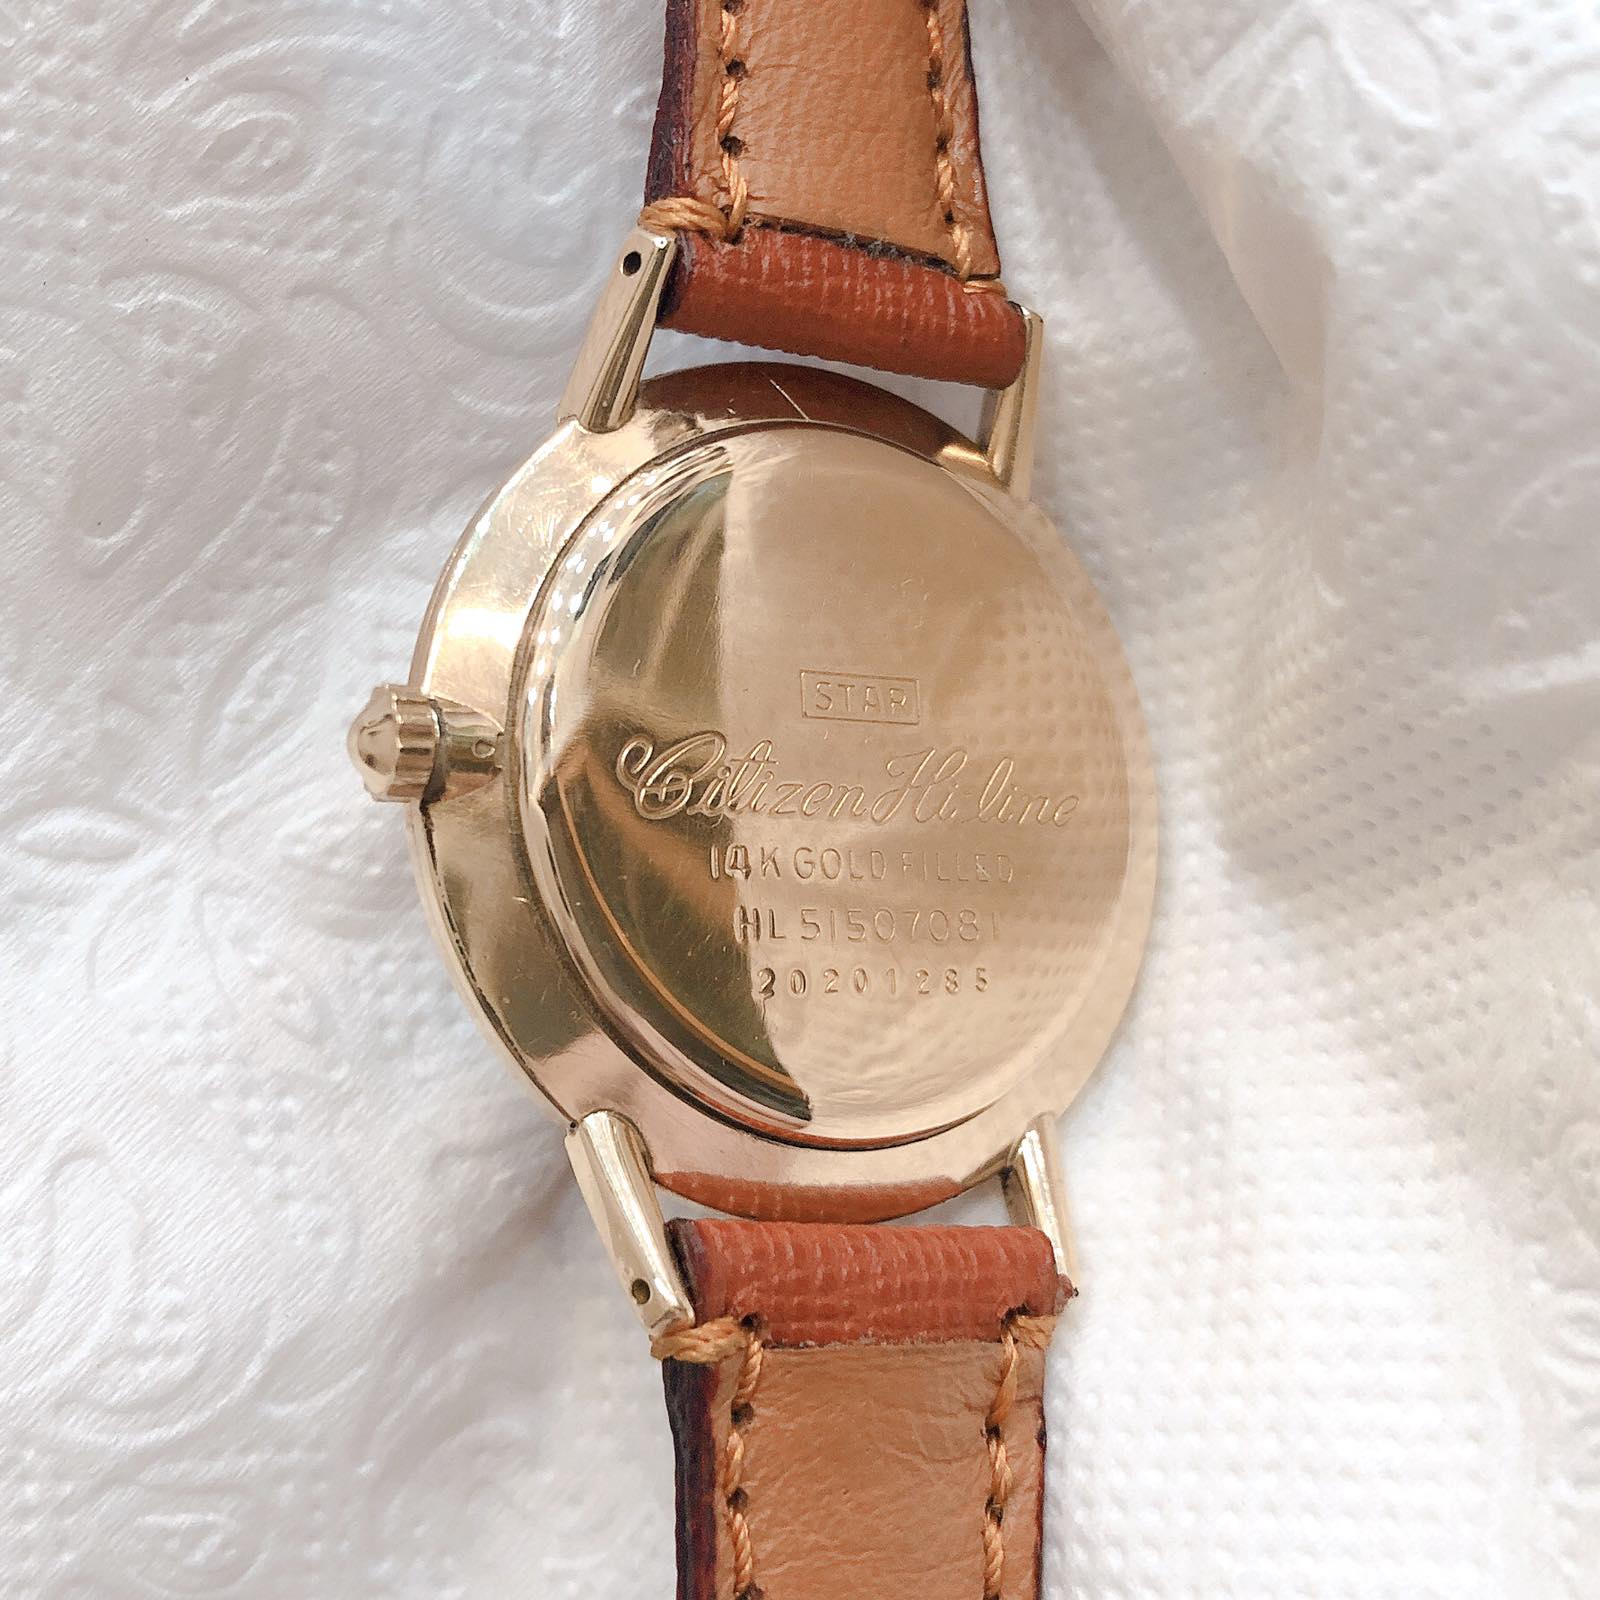 Đồng hồ cổ Citizen Hiline lên dây 14k goldfilled chính hãng nhật bản